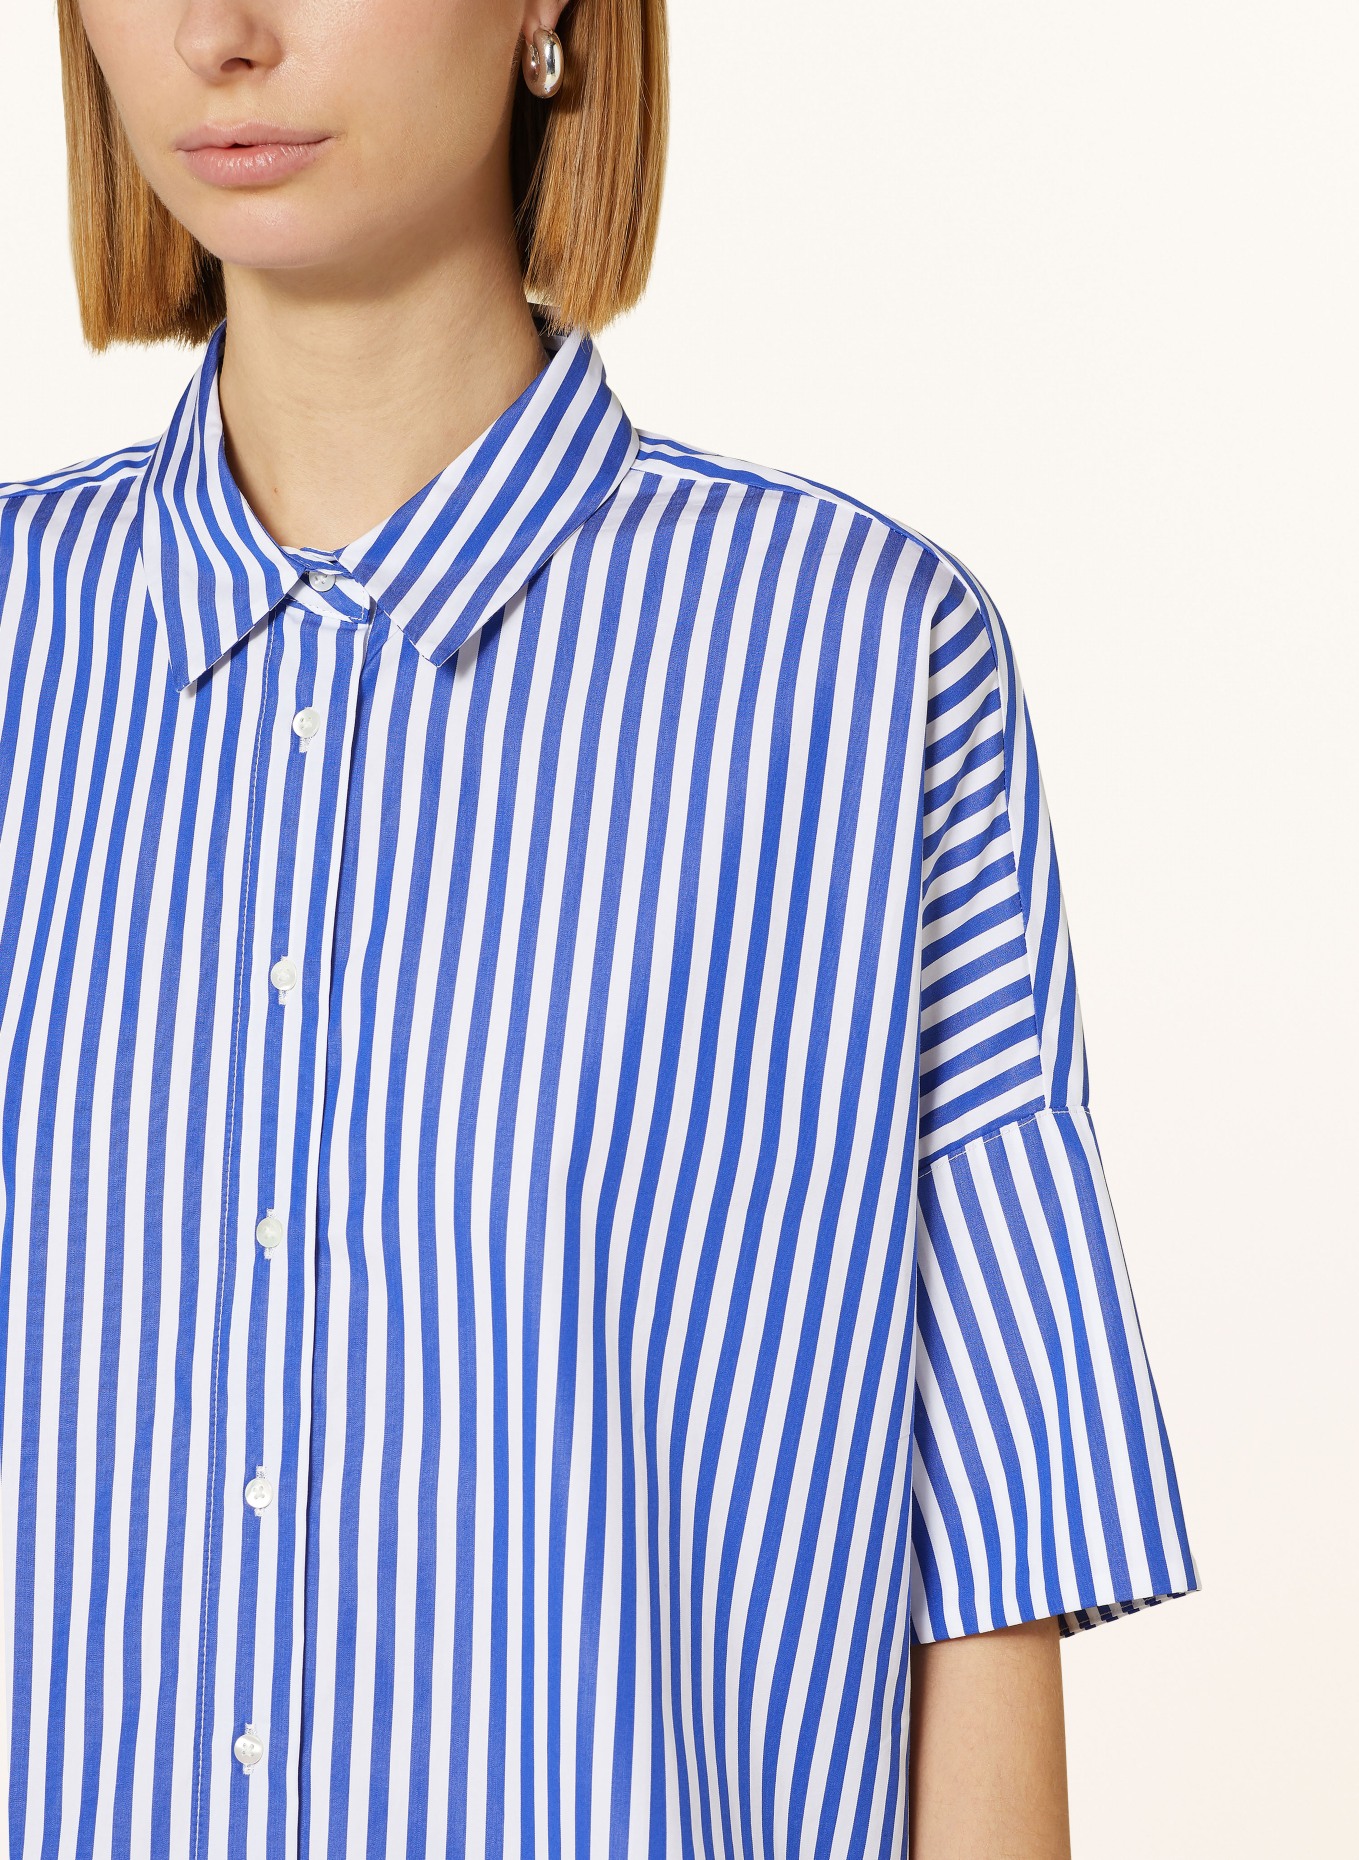 TONNO & PANNA Shirt blouse, Color: WHITE/ BLUE (Image 4)